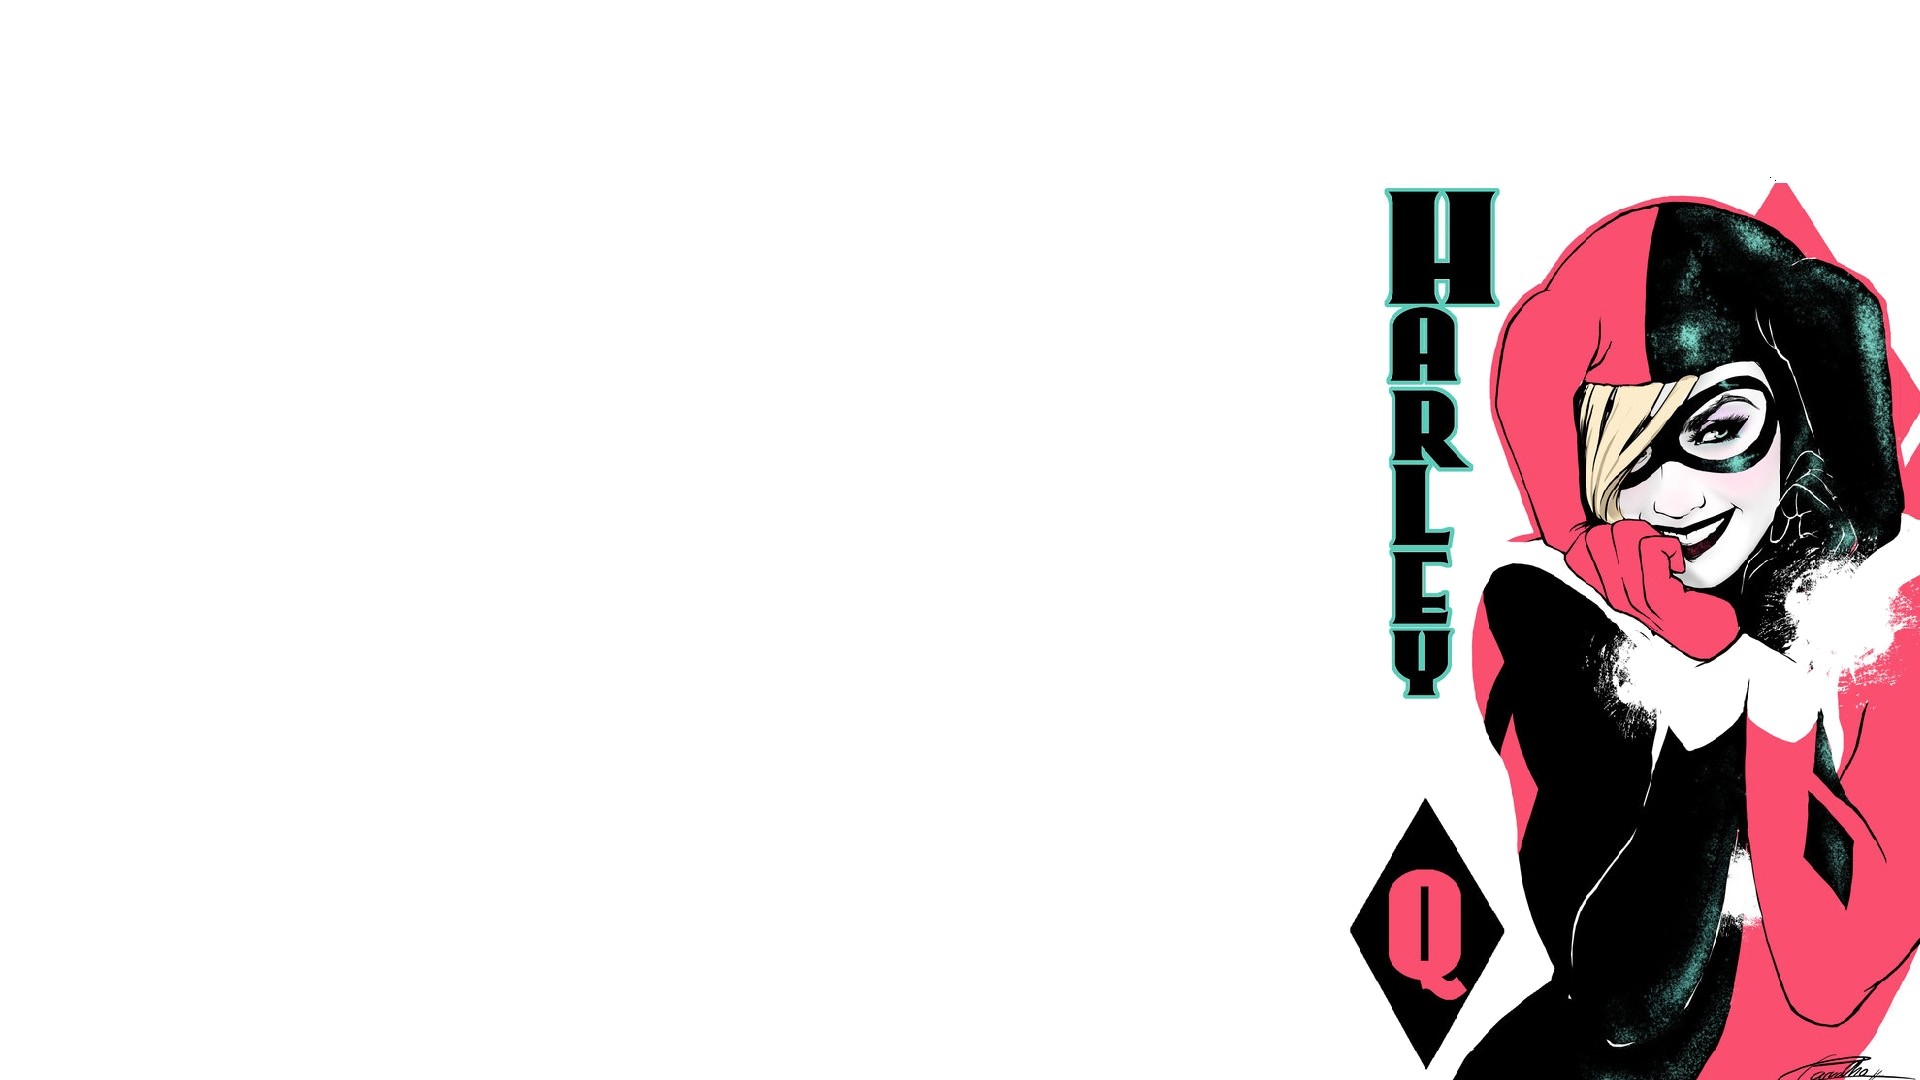 Harley Quinn And Joker Wallpaper ① Download Free Beautiful Full Hd